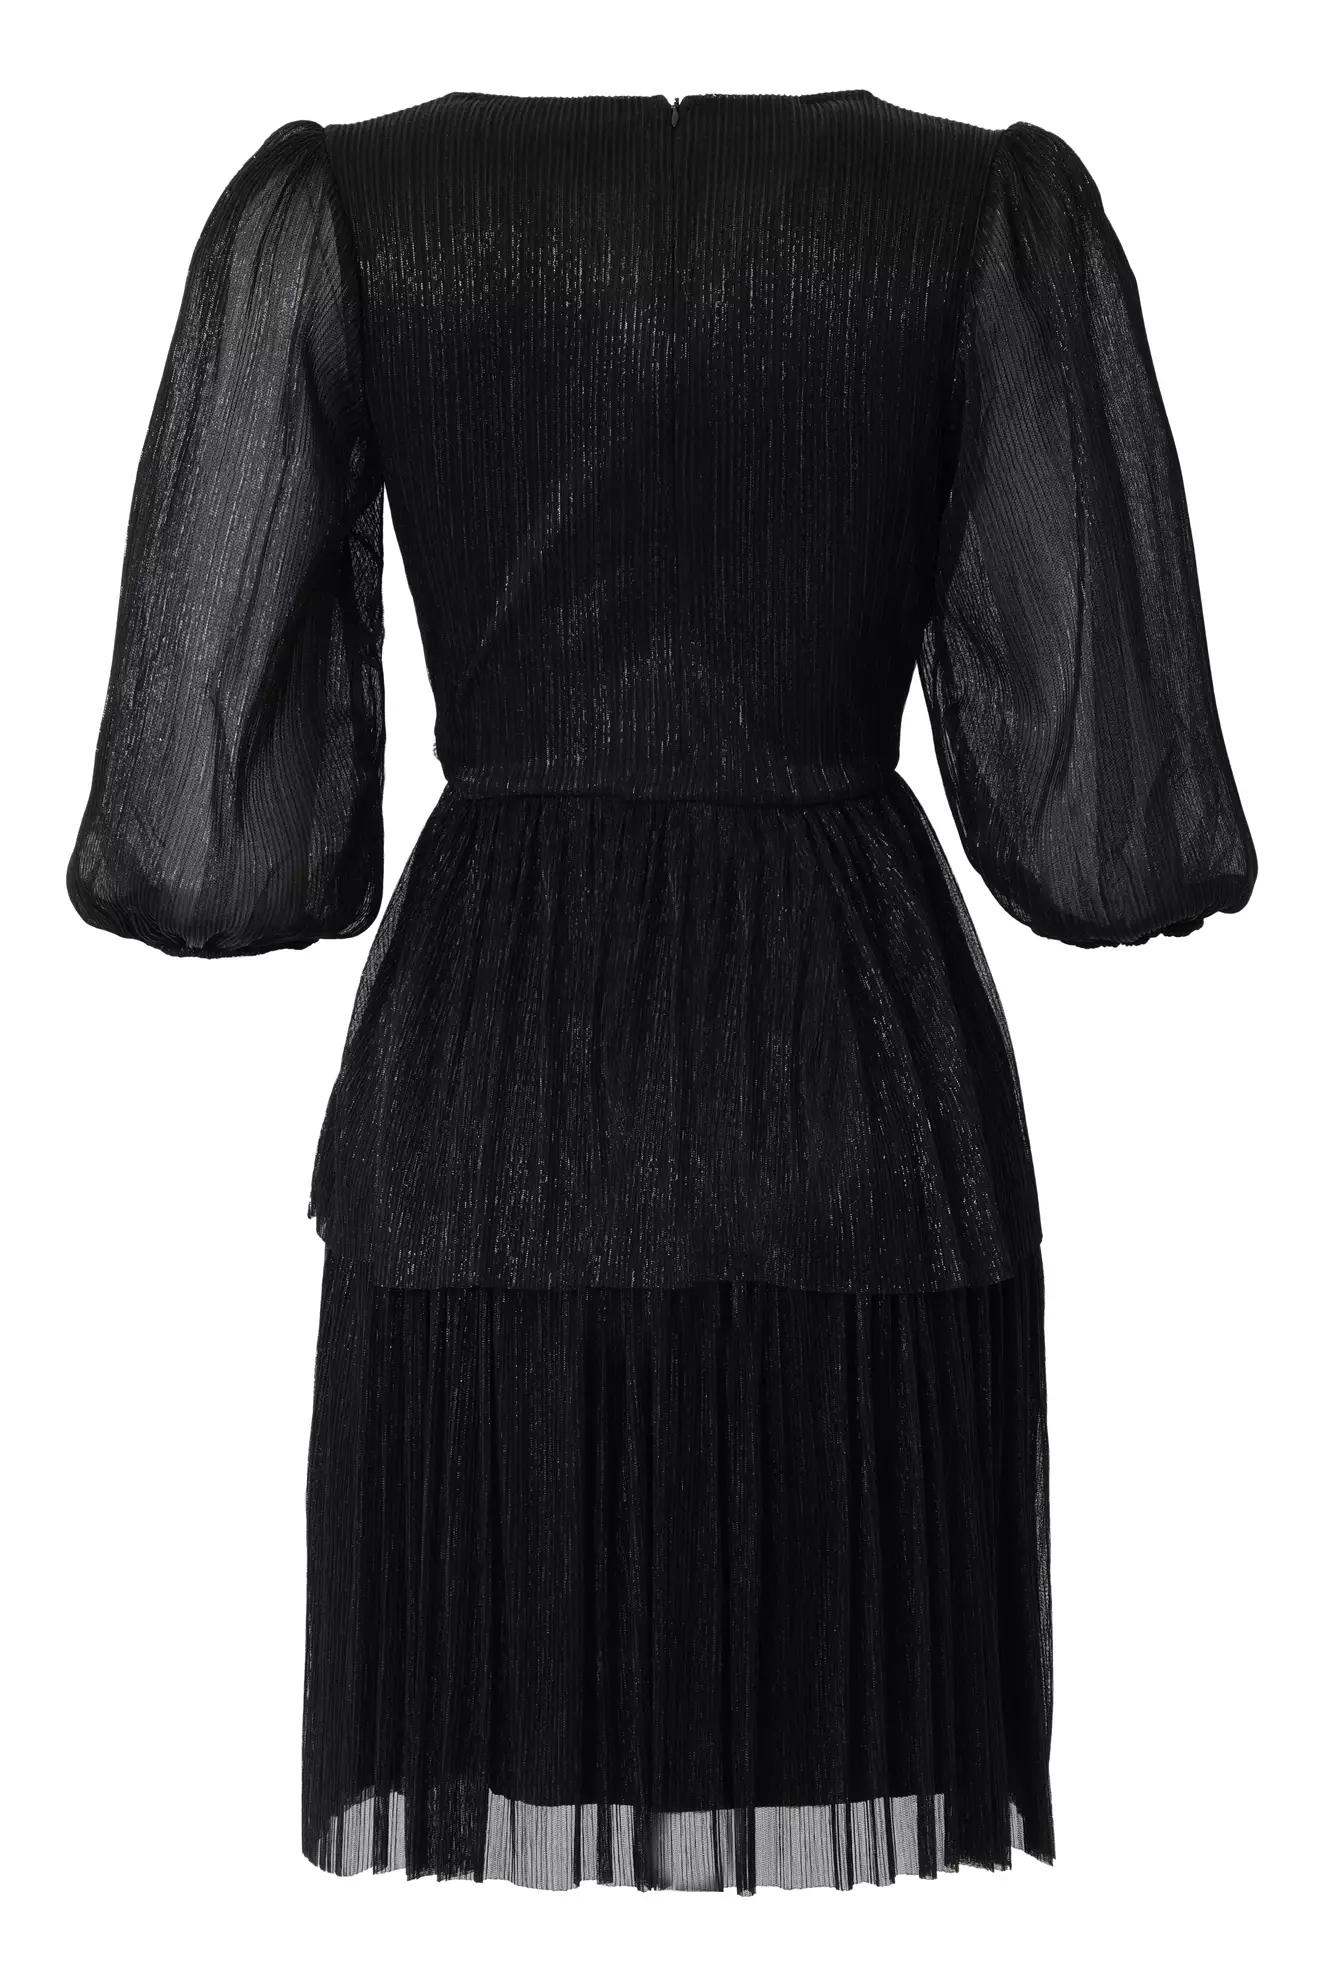 Black moonlight kapri kol mini dress